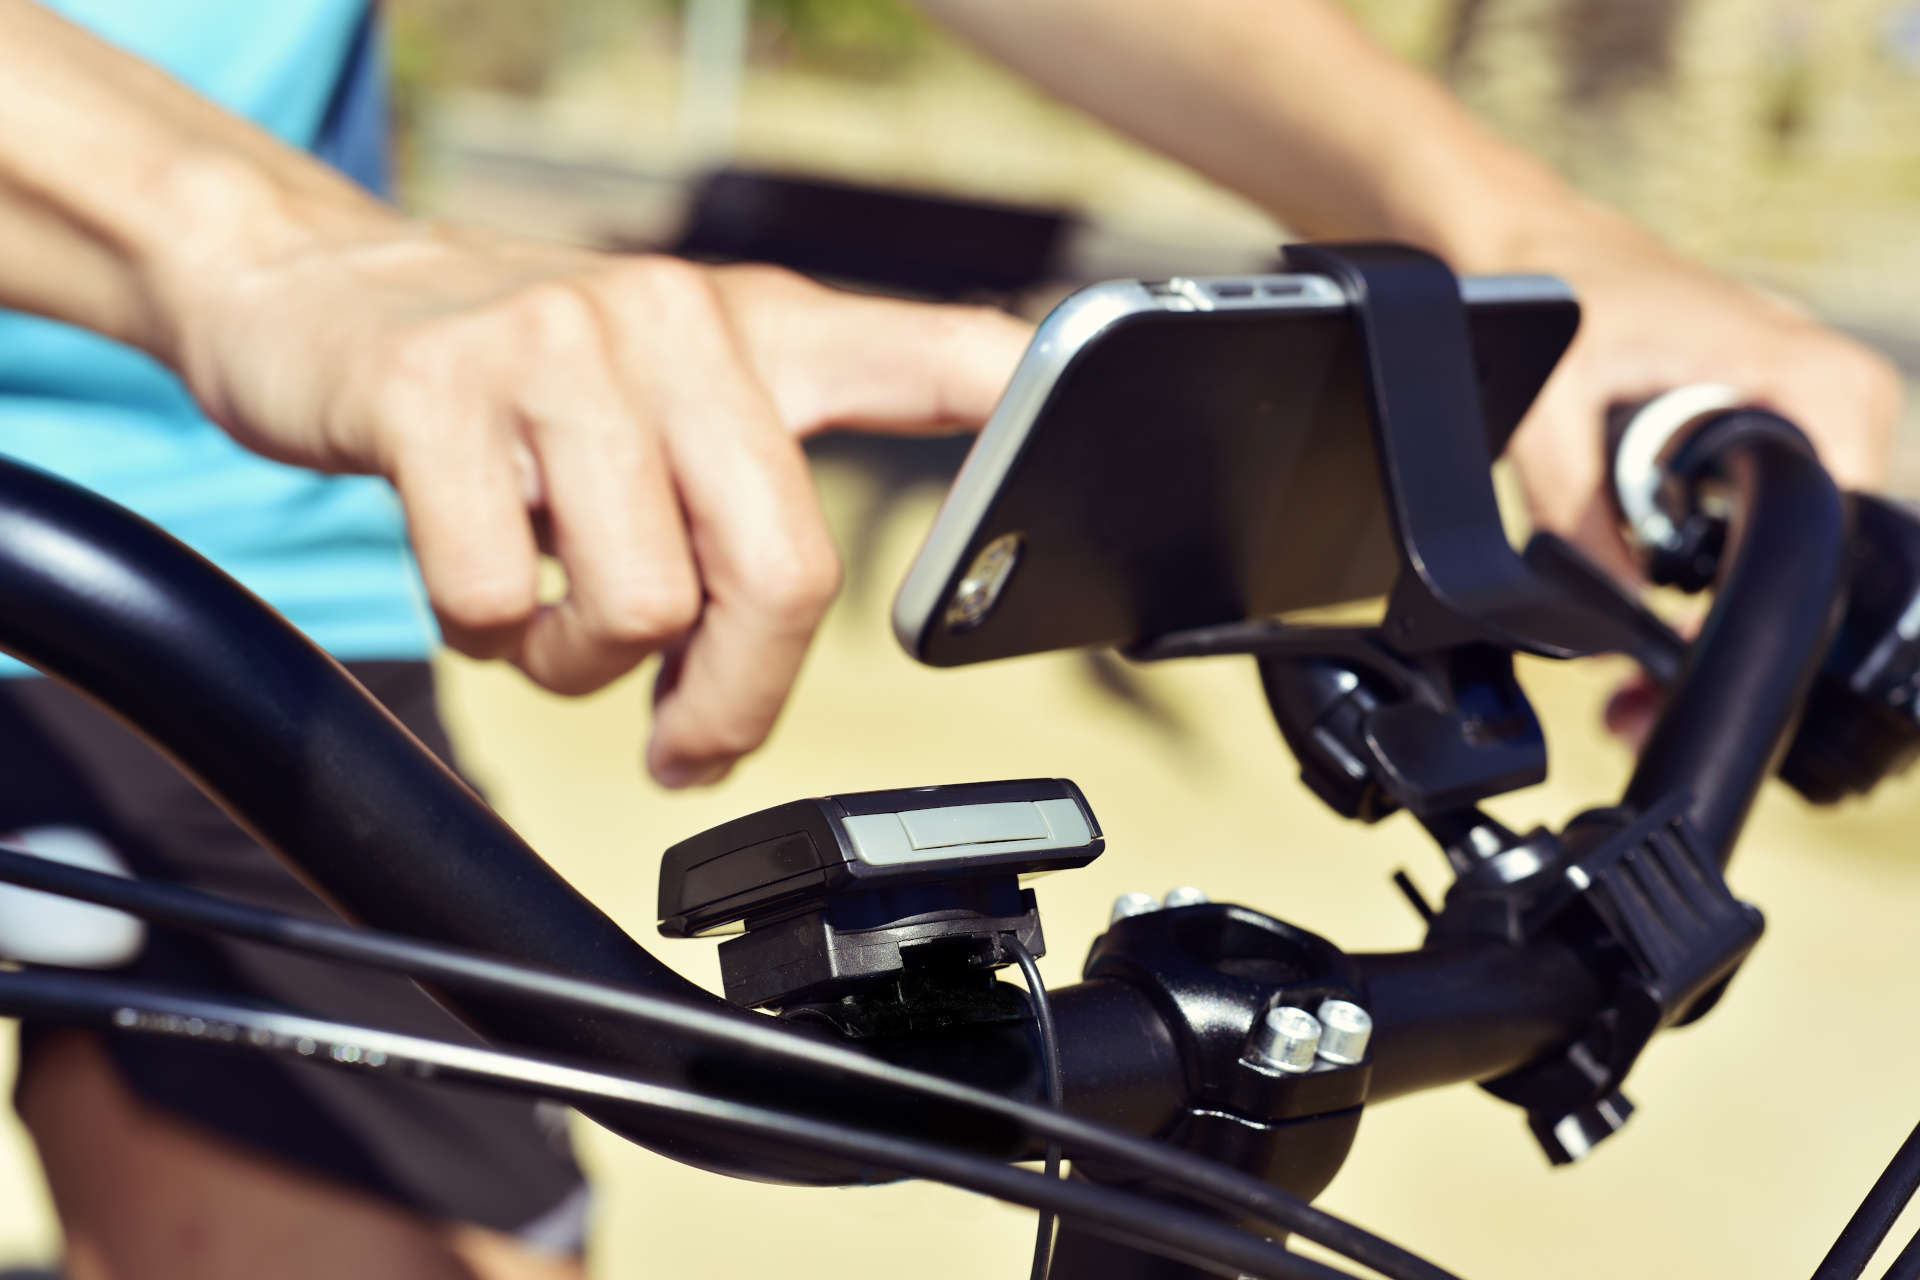 Smartphone befindet sich in einer Halterung am Fahrrad.